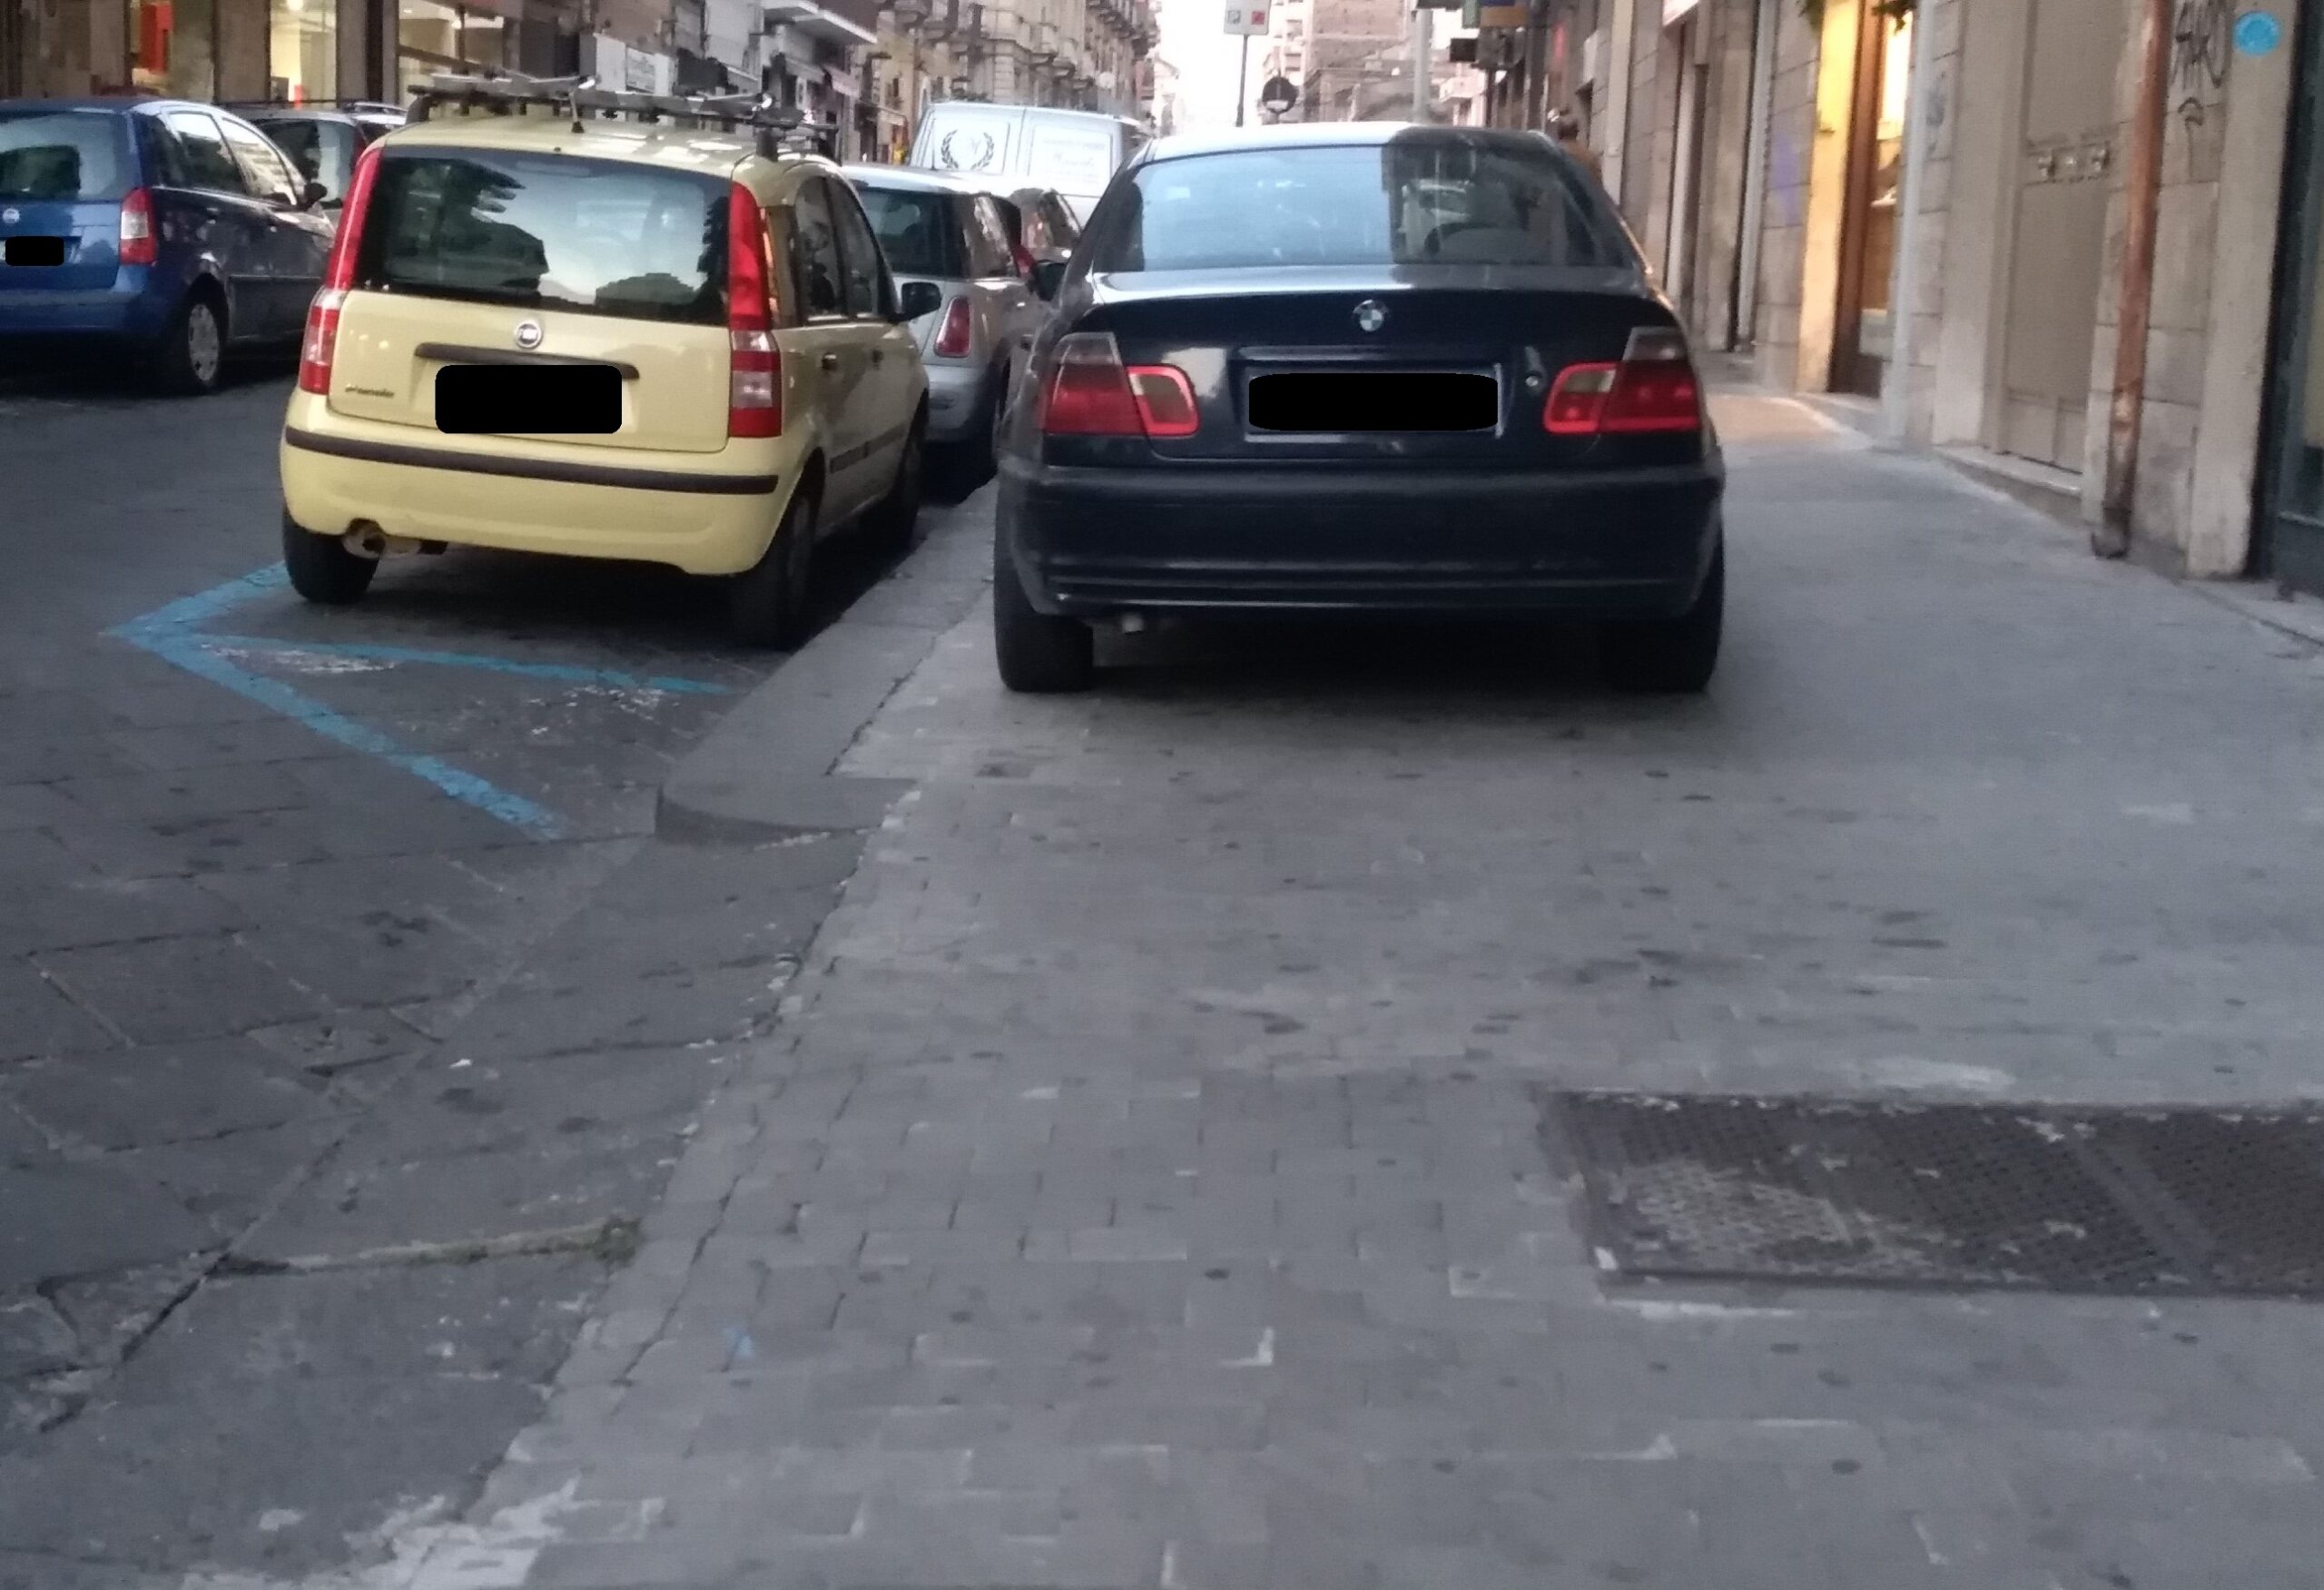 Catania, parcheggi selvaggi con rischi per pedoni e blocco del traffico. Parisi: “Servono soluzioni adeguate”